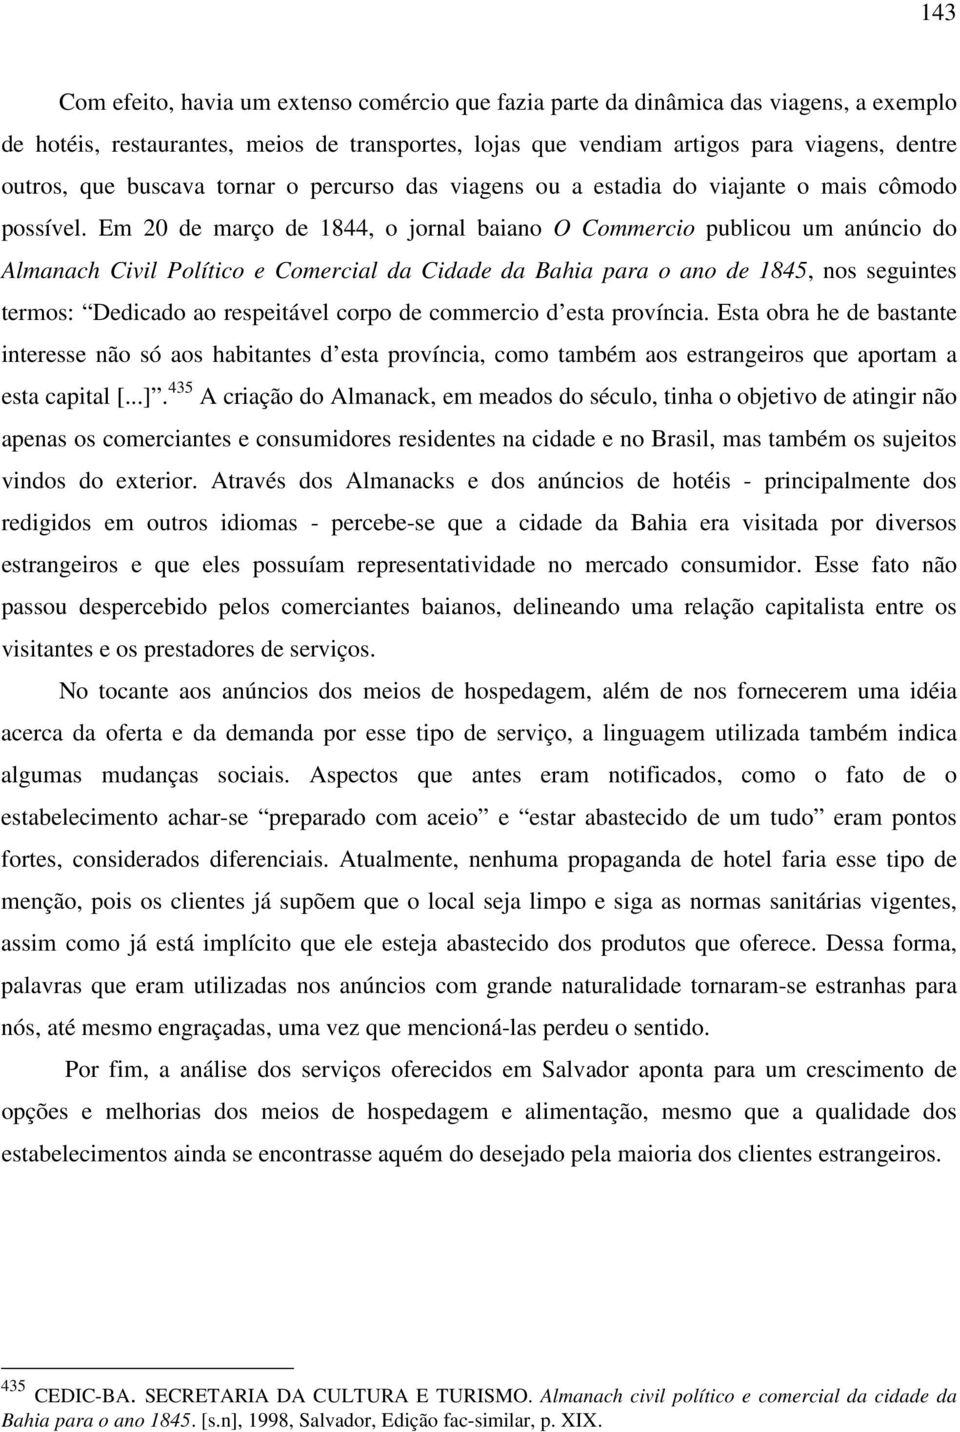 Em 20 de março de 1844, o jornal baiano O Commercio publicou um anúncio do Almanach Civil Político e Comercial da Cidade da Bahia para o ano de 1845, nos seguintes termos: Dedicado ao respeitável